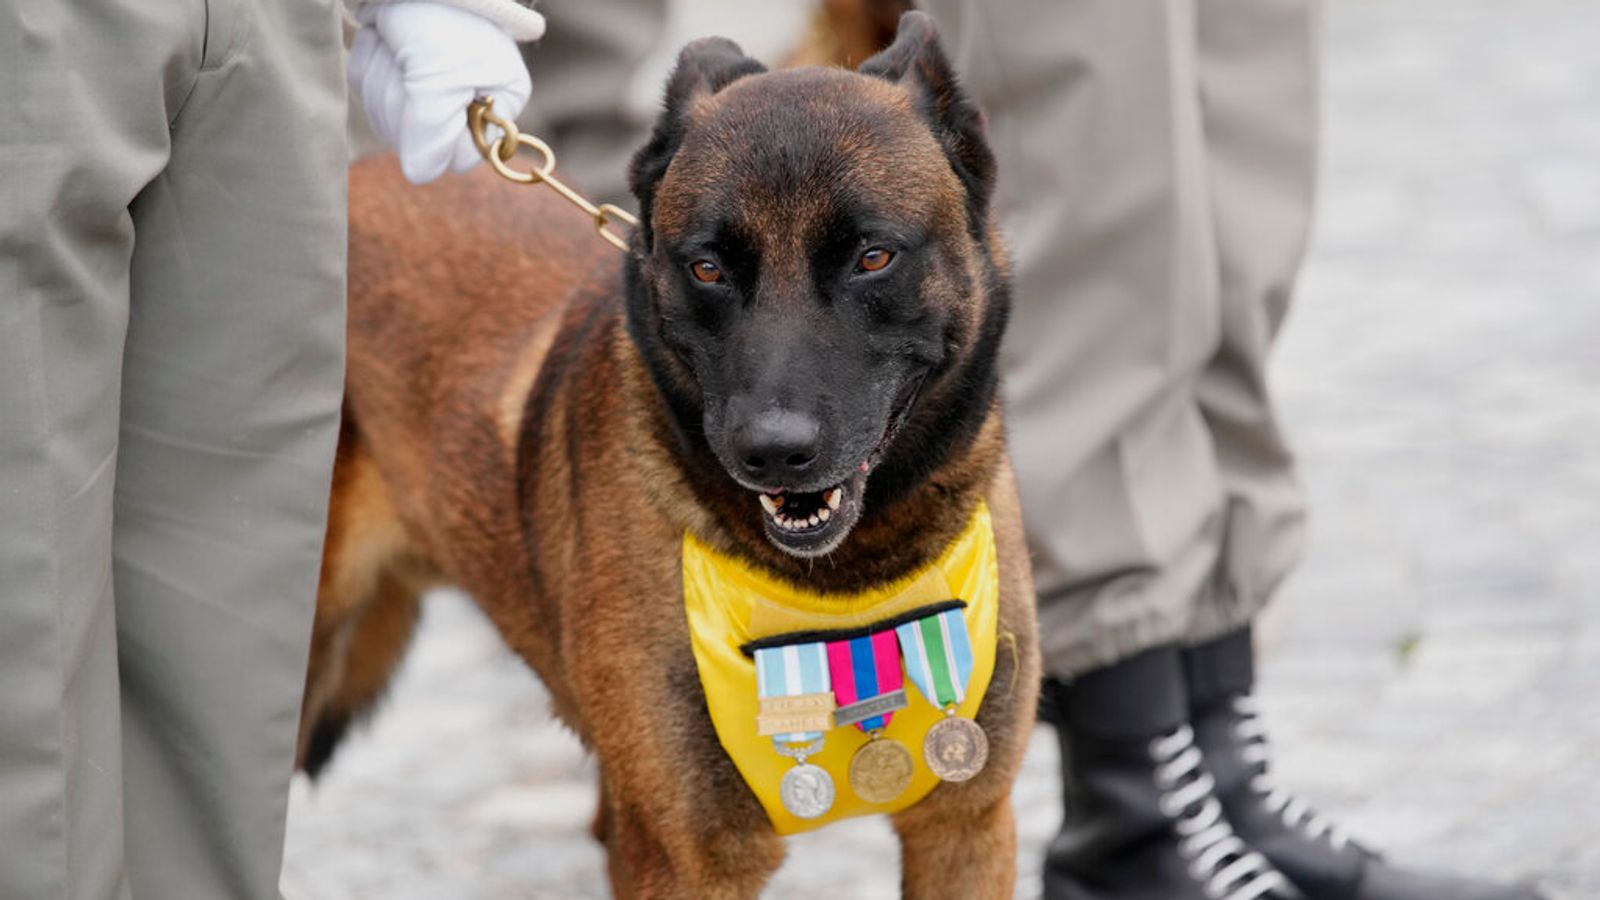 Des chiens héros qui ont aidé à combattre l’extrémisme et à traquer des suspects terroristes honorés d’un mémorial en France |  Nouvelles du monde